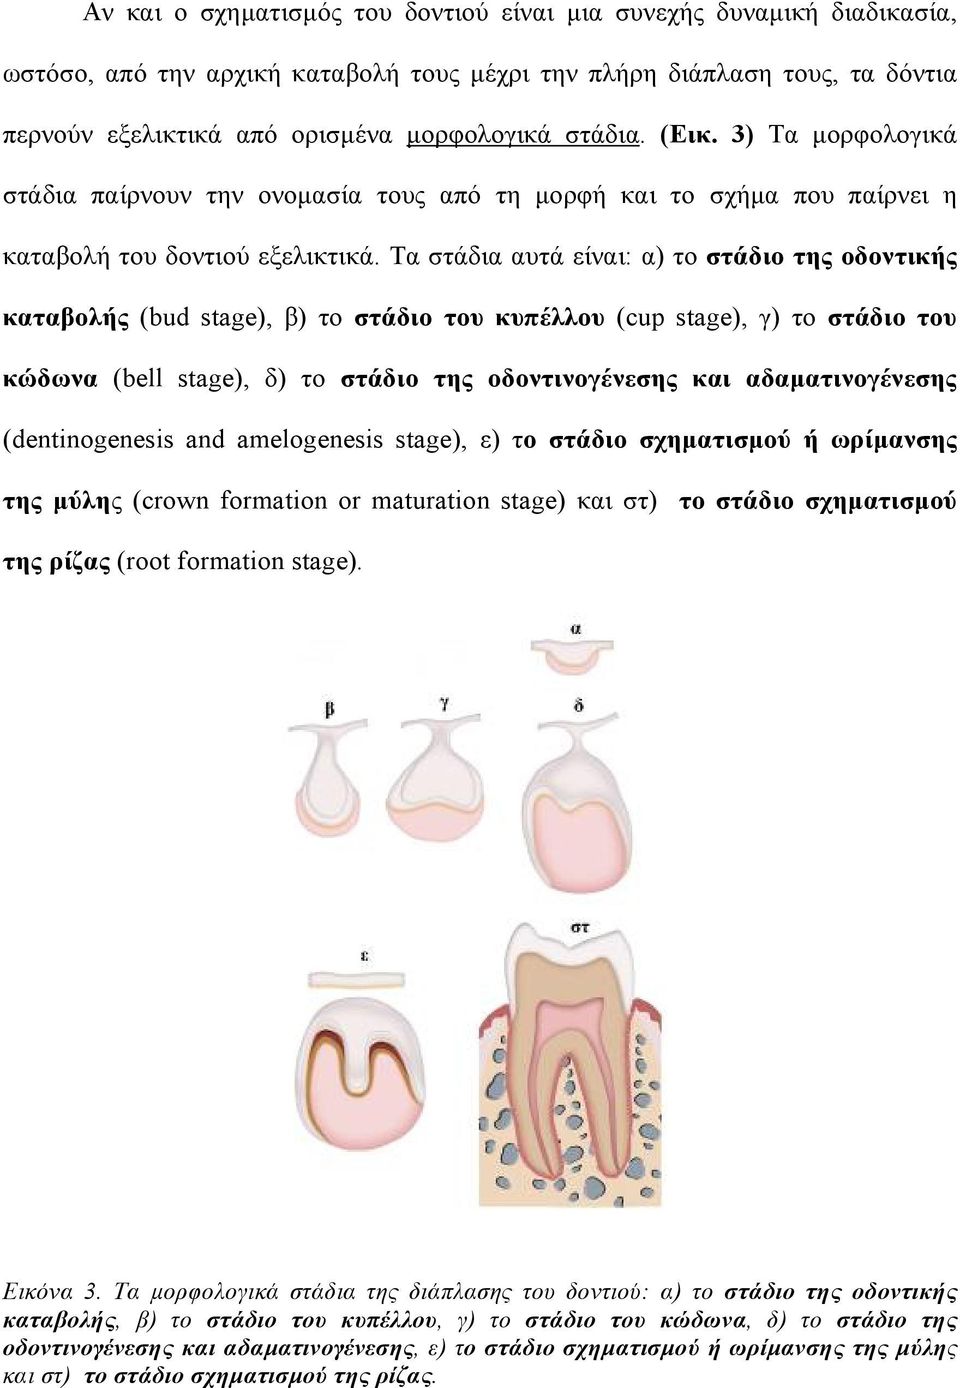 Τα στάδια αυτά είναι: α) το στάδιο της οδοντικής καταβολής (bud stage), β) το στάδιο του κυπέλλου (cup stage), γ) το στάδιο του κώδωνα (bell stage), δ) το στάδιο της οδοντινογένεσης και